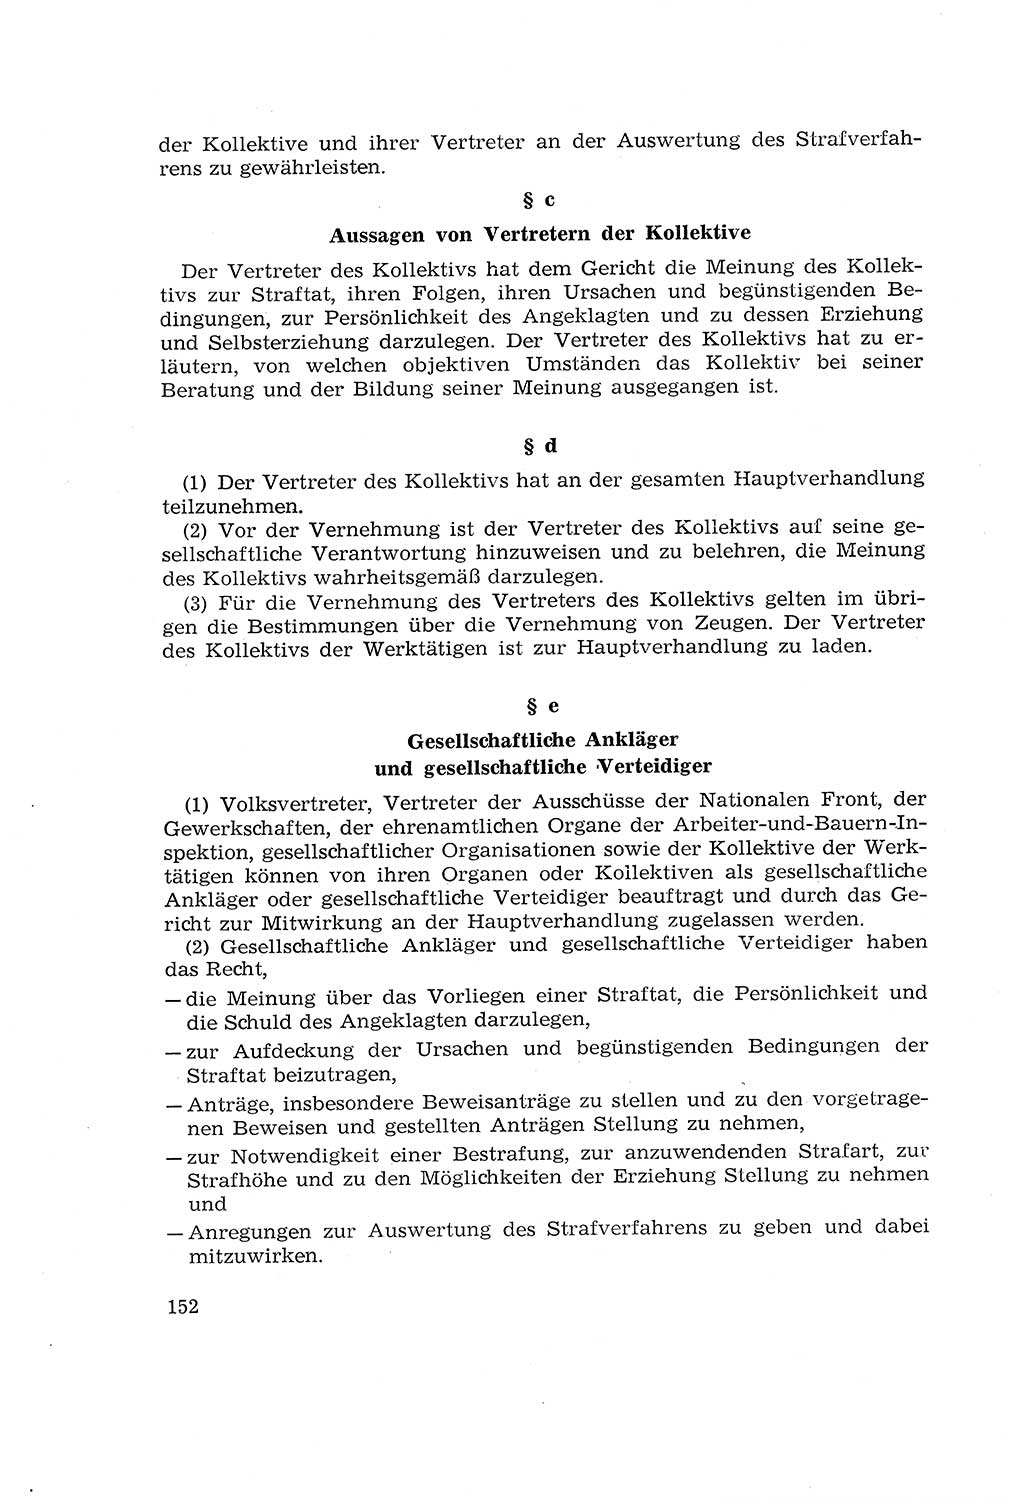 Die Mitwirkung der Werktätigen am Strafverfahren [Deutsche Demokratische Republik (DDR)] 1966, Seite 152 (Mitw. Str.-Verf. DDR 1966, S. 152)